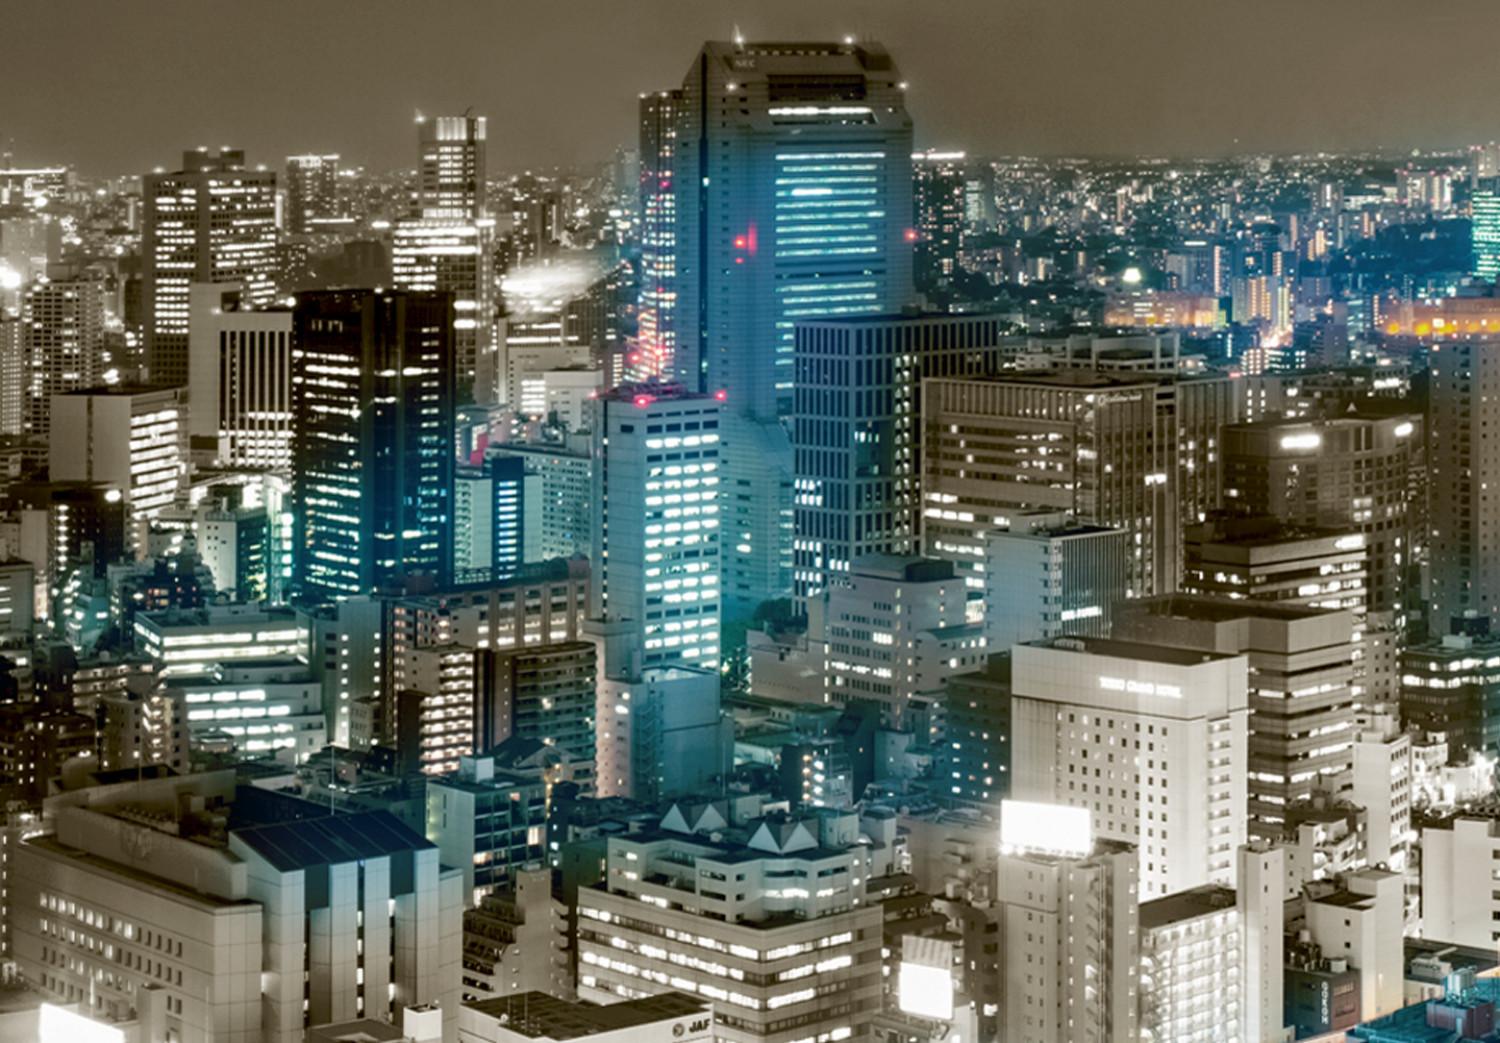 Cuadro decorativo Panorama de Tokio (1 parte) - rascacielos bajo un cielo gris-marrón